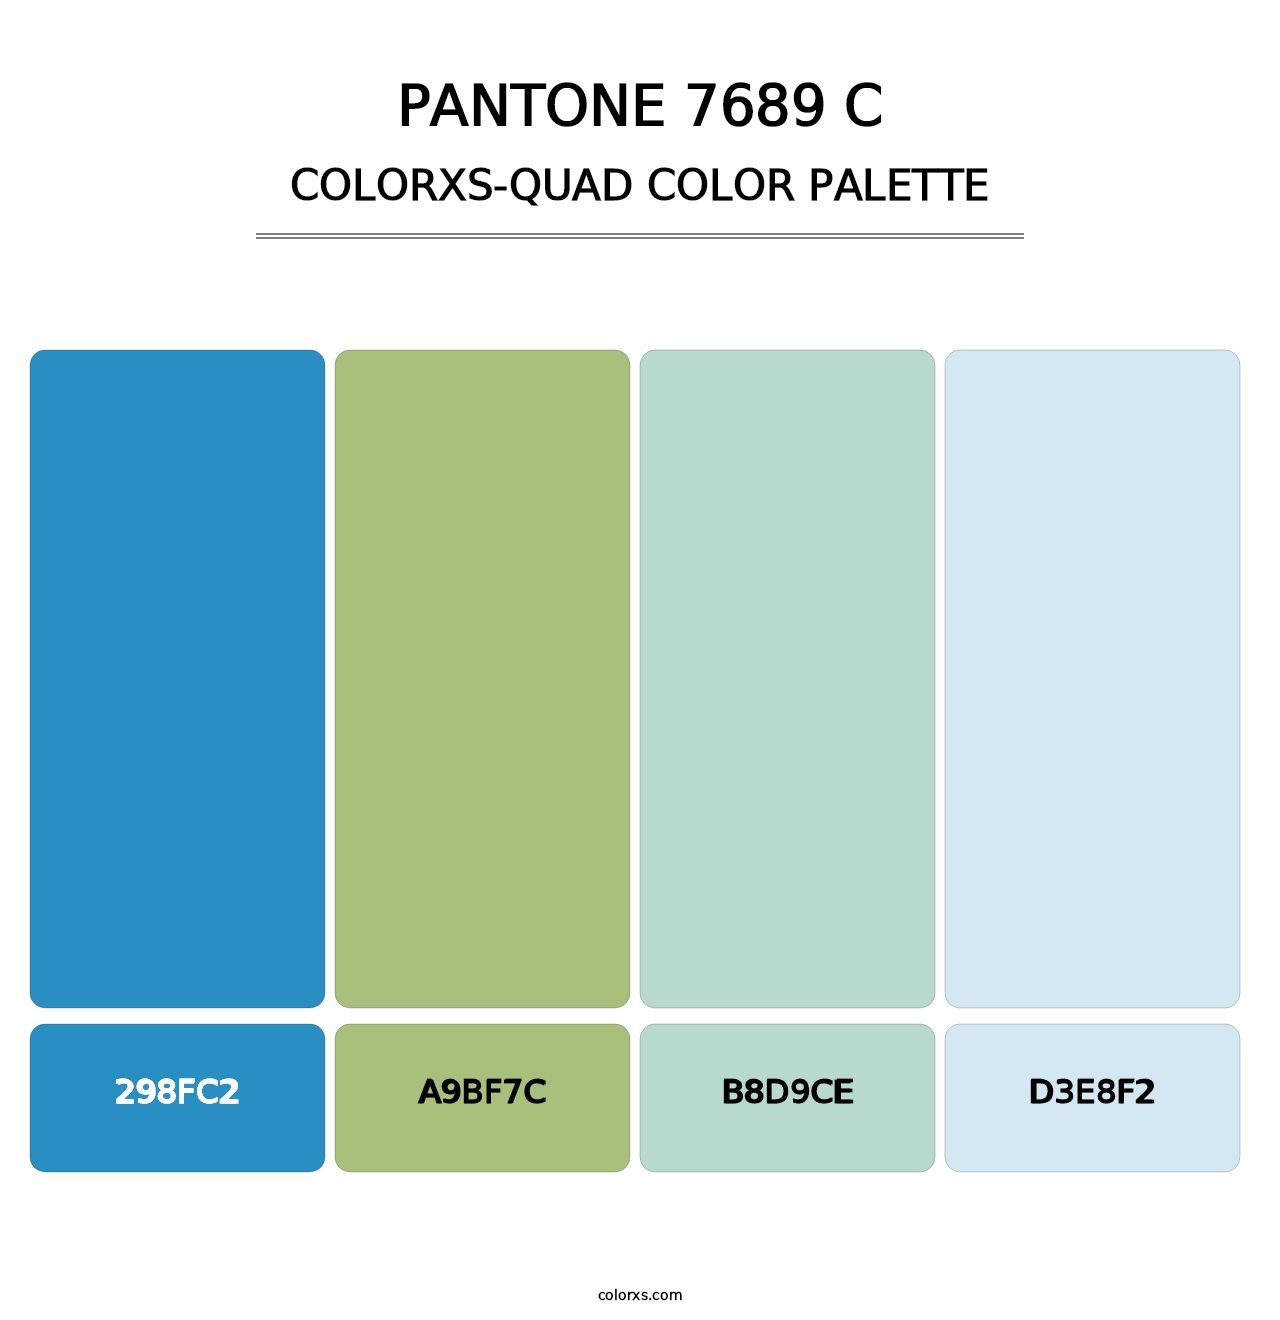 PANTONE 7689 C - Colorxs Quad Palette